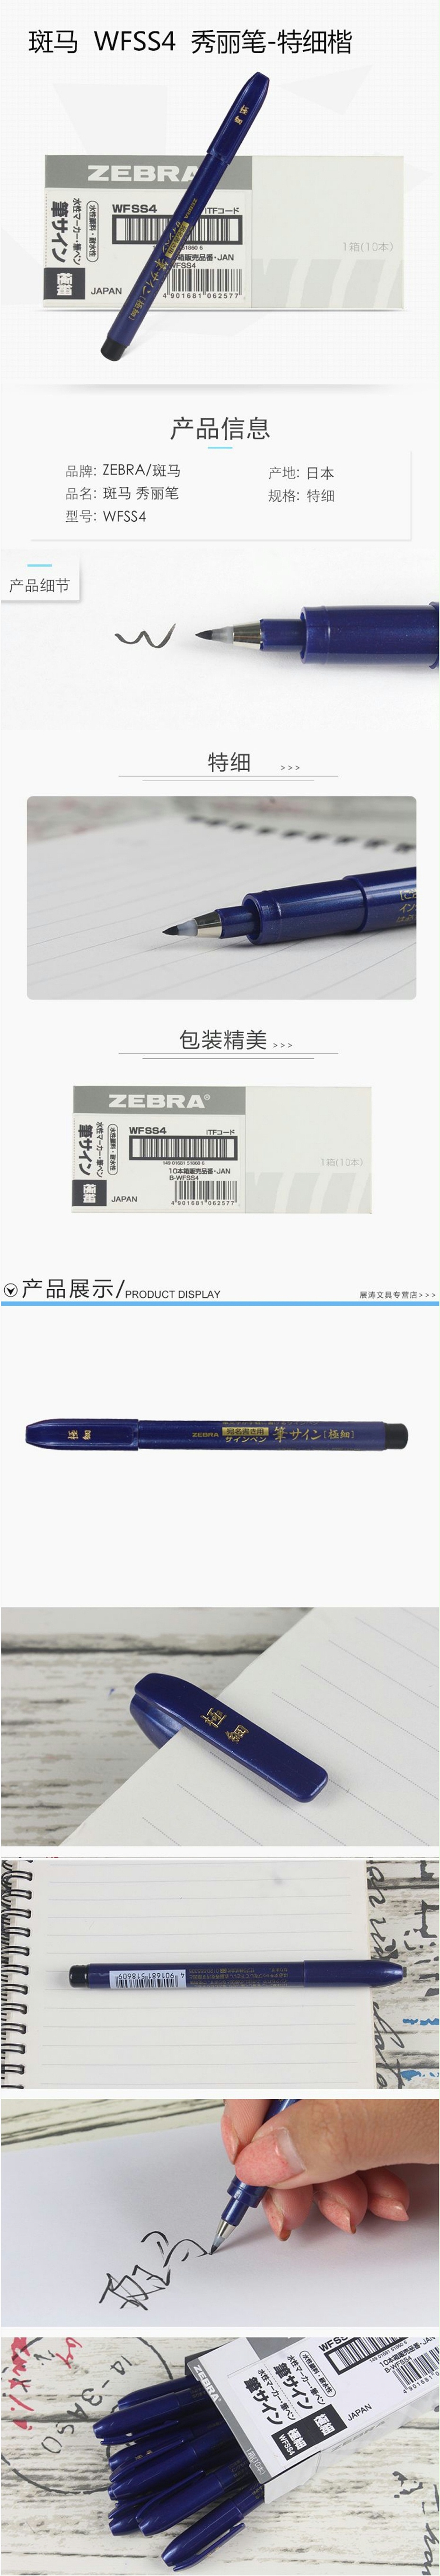 斑马 特呦秀丽毛笔 WFSS4 插盖式 最大直径11.5mm 黑色